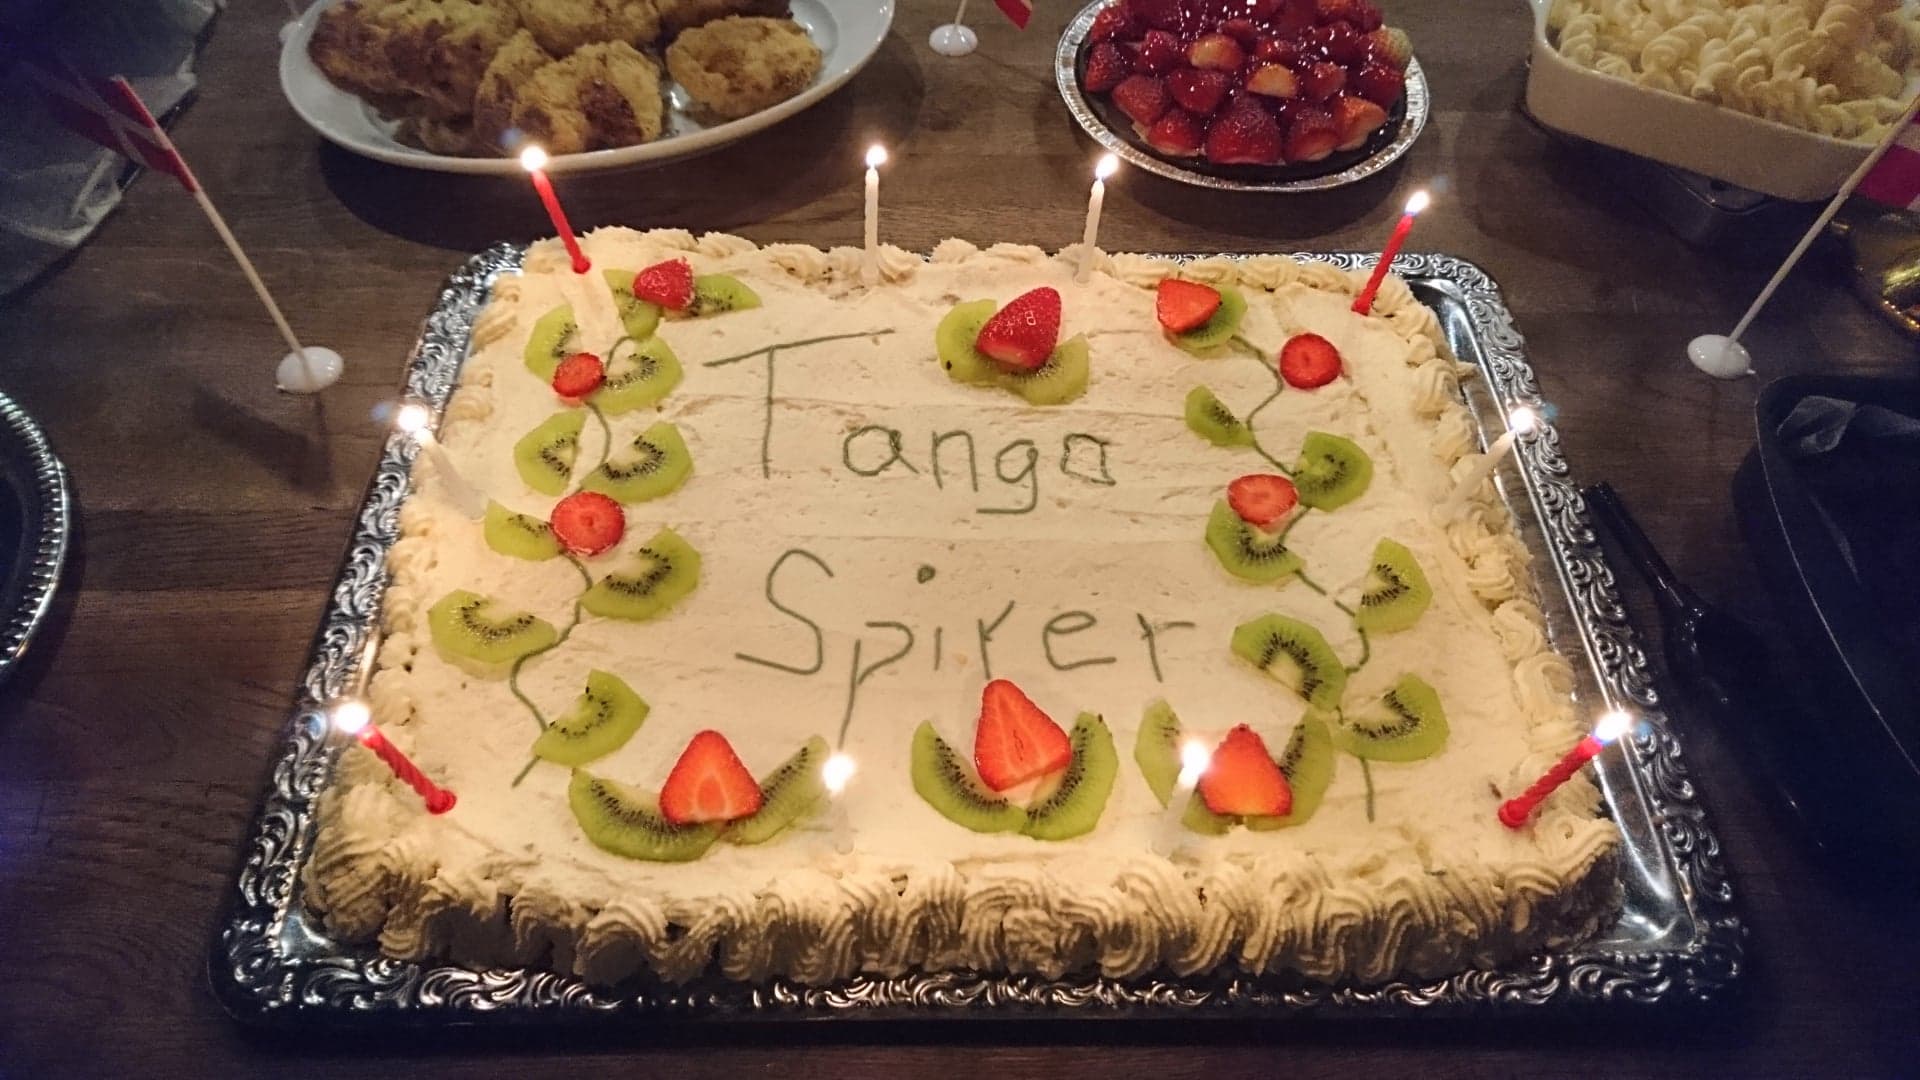 Tangospirer 3 years birthday